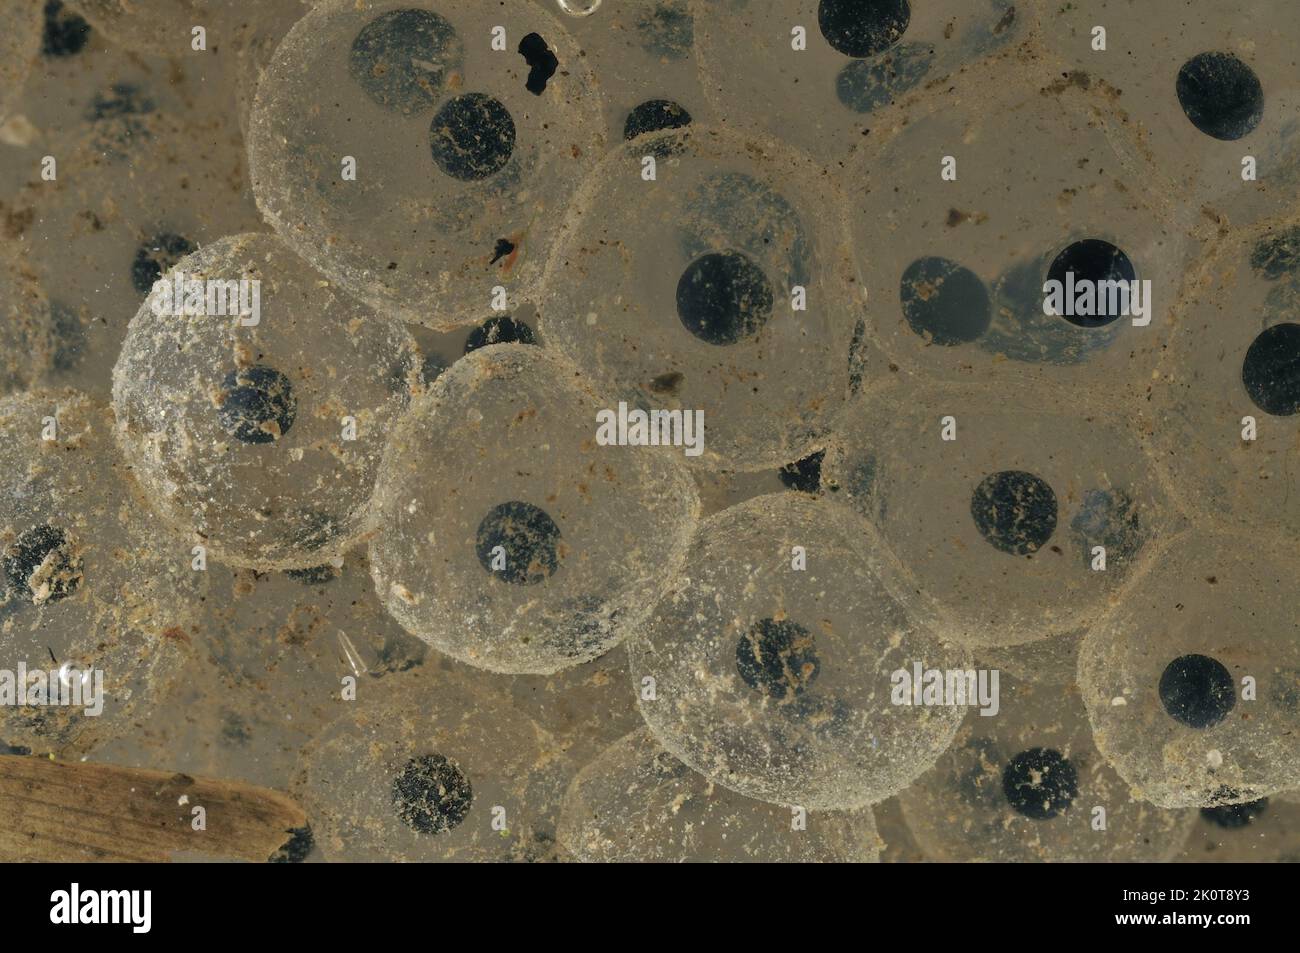 Gemeinsamen Frosch (Rana Temporaria) Cluster von Eiern - Embryonen nach 3 Tagen Stockfoto